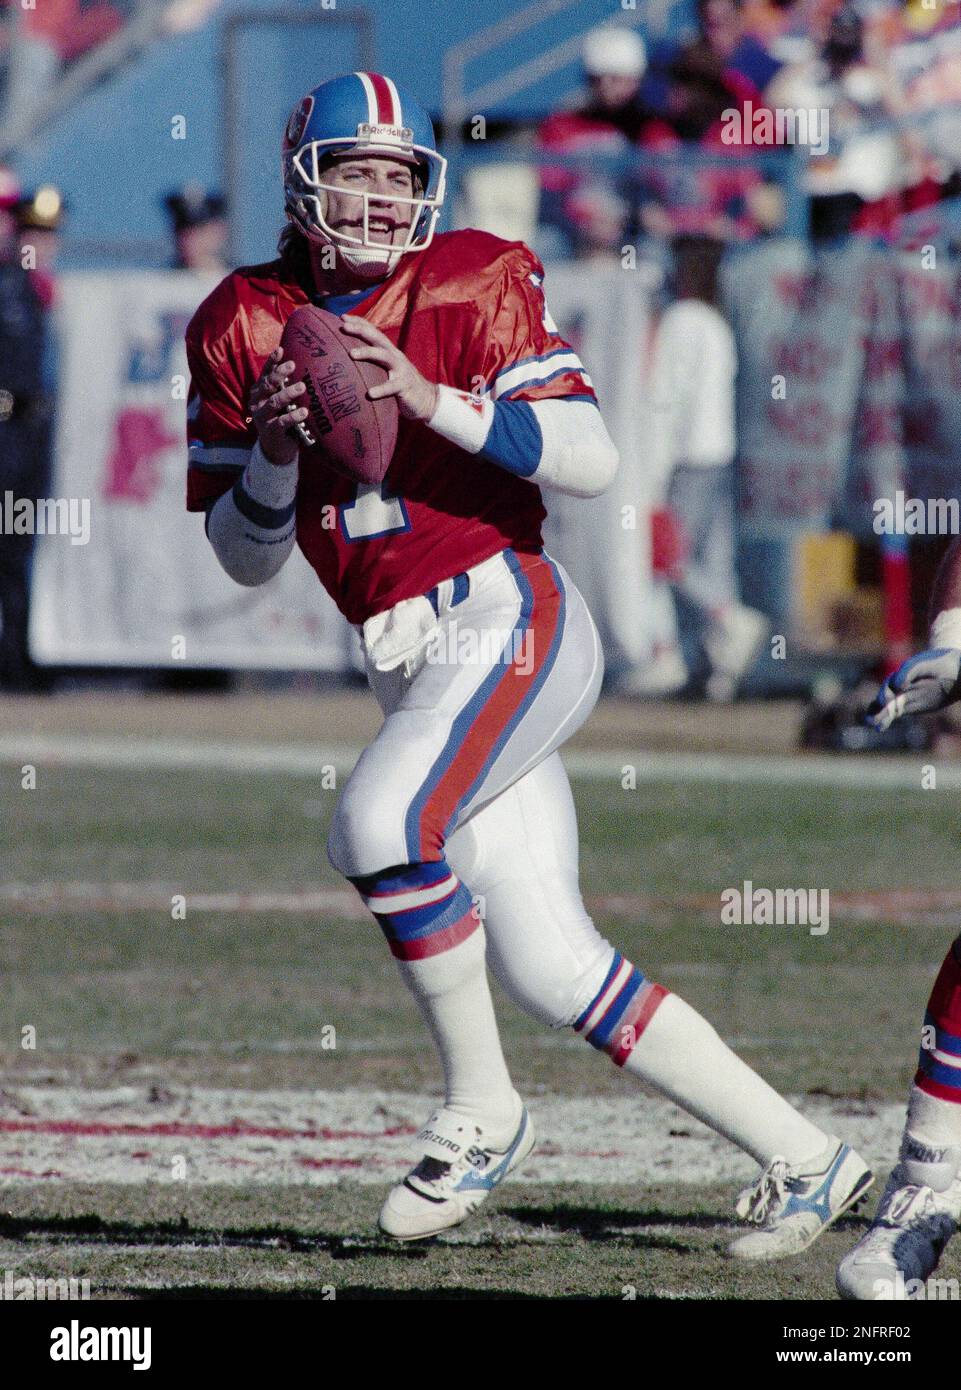 John Elway, Denver Broncos quarterback, prepares to throw the ball